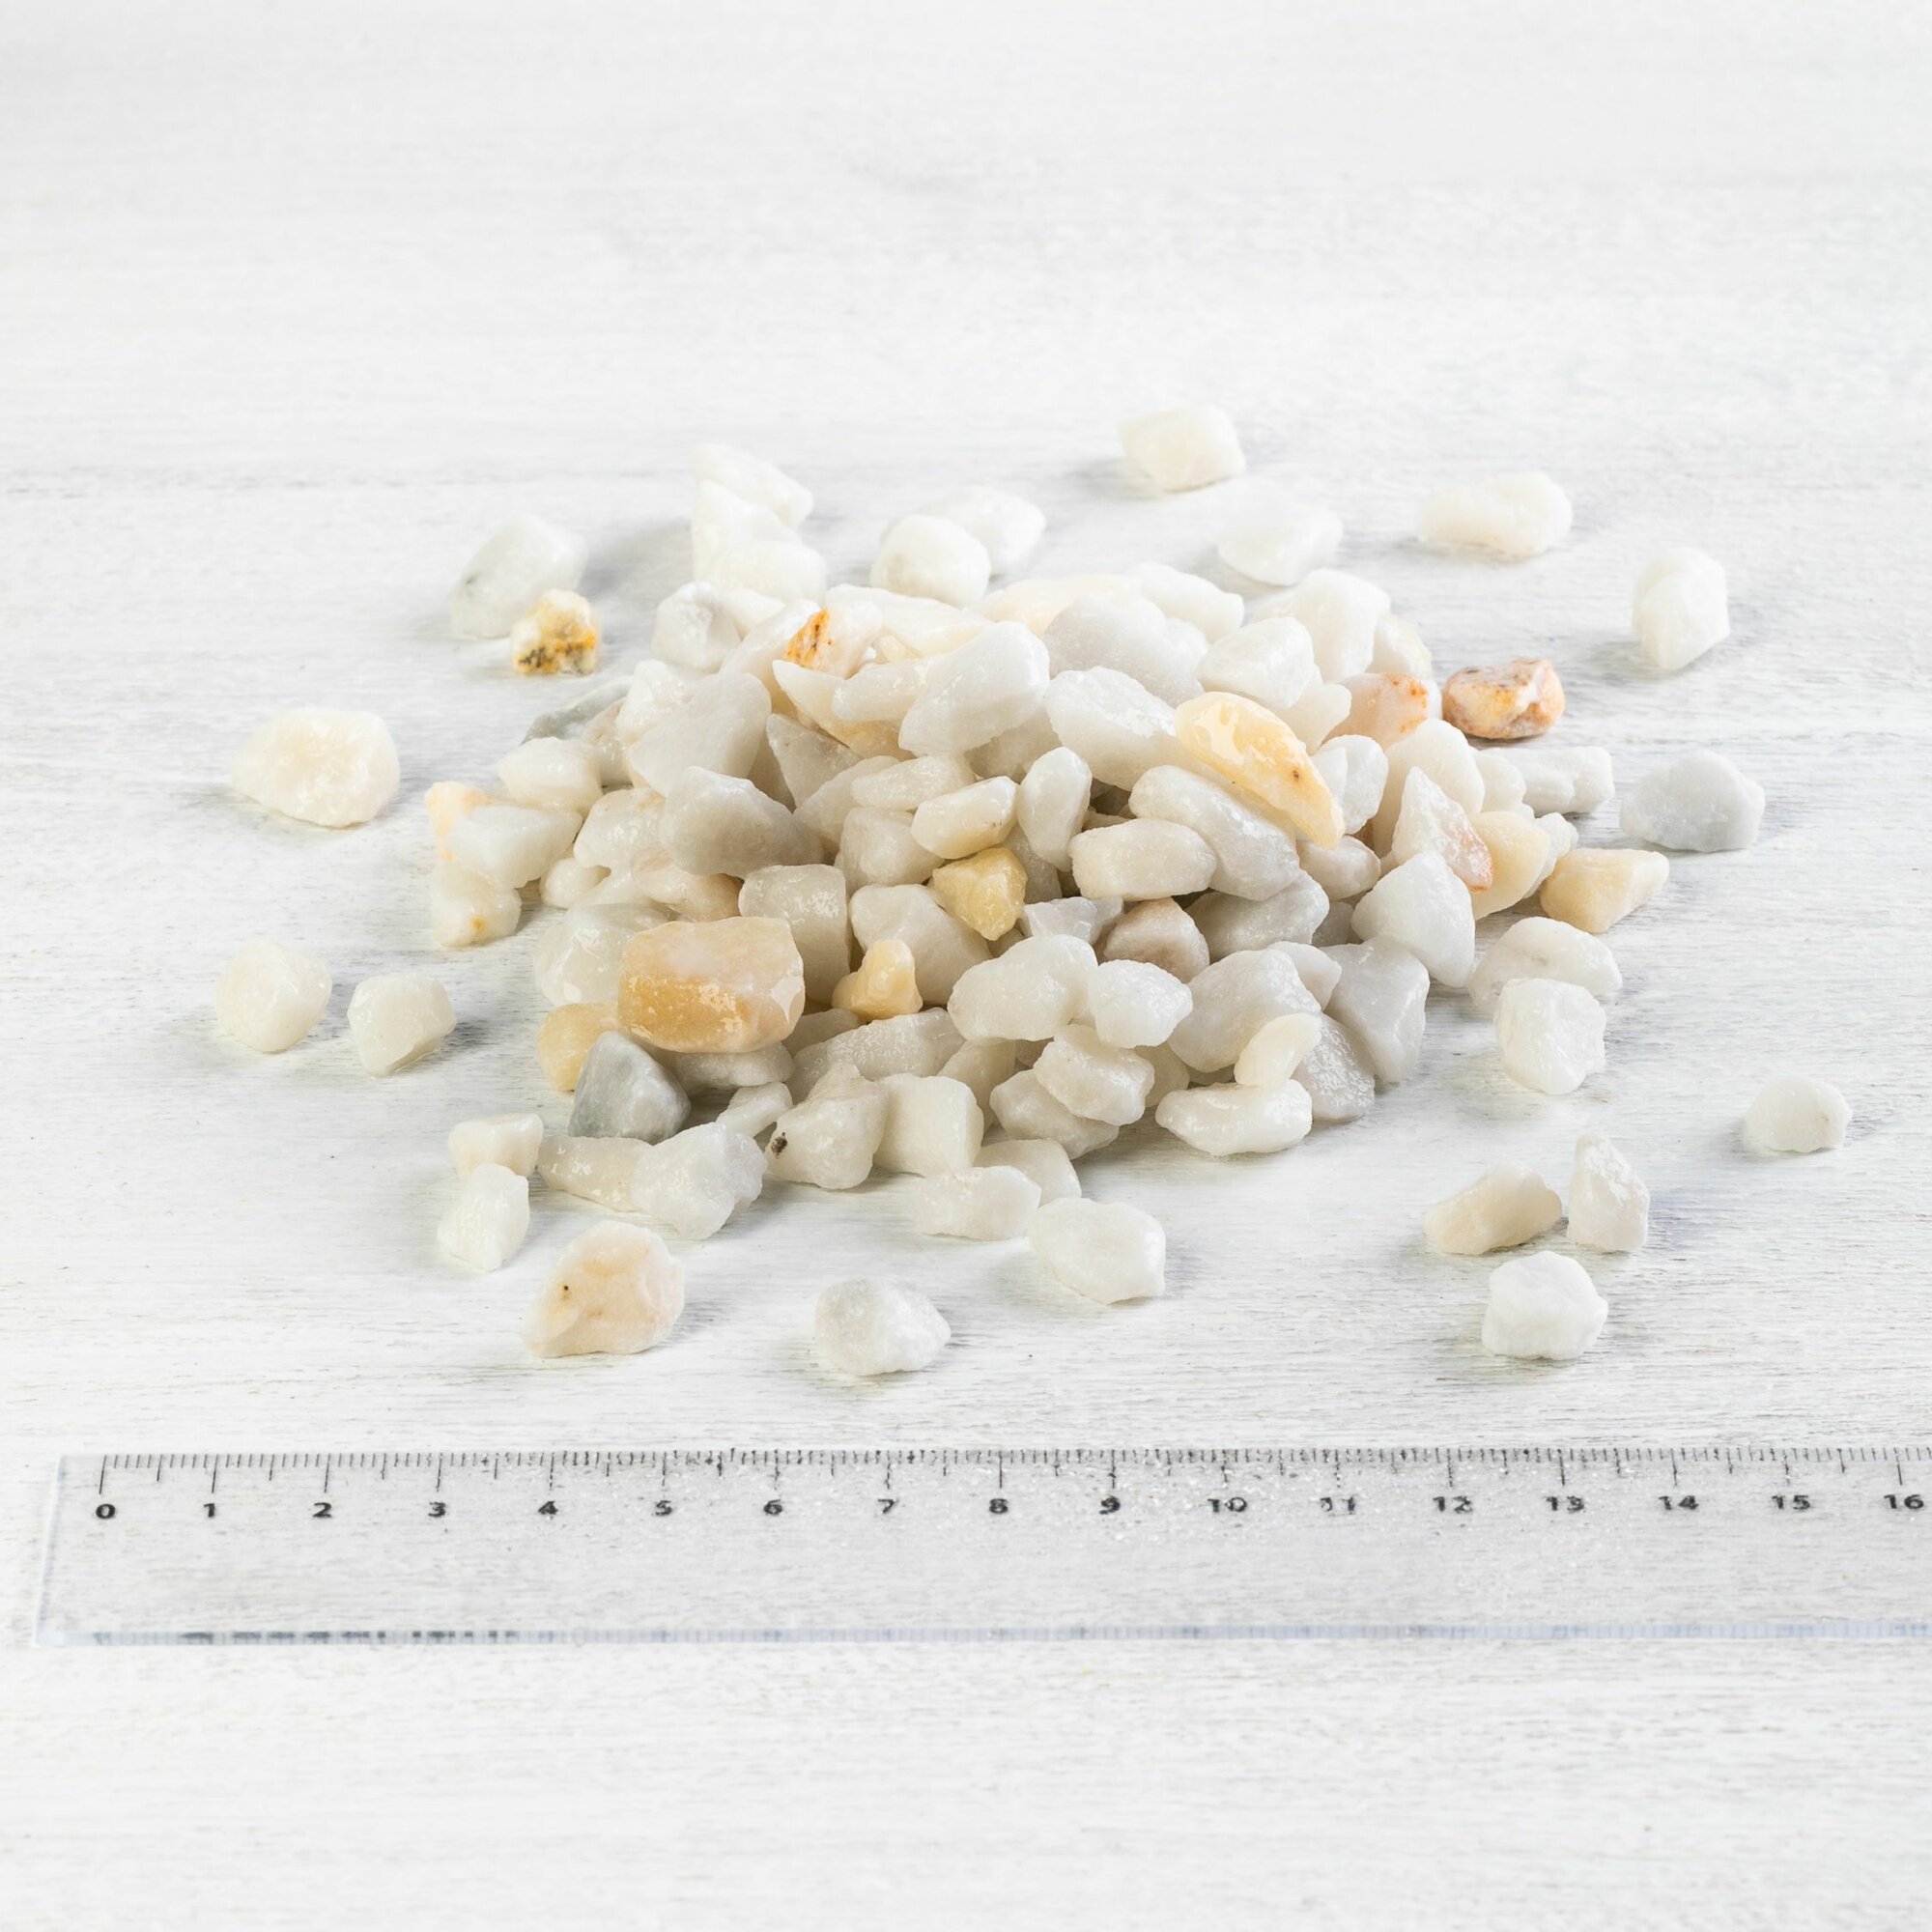 Мраморная крошка белая для ландшафта фракция 7-12 мм, 3 кг (316). Декоративный грунт, каменная крошка